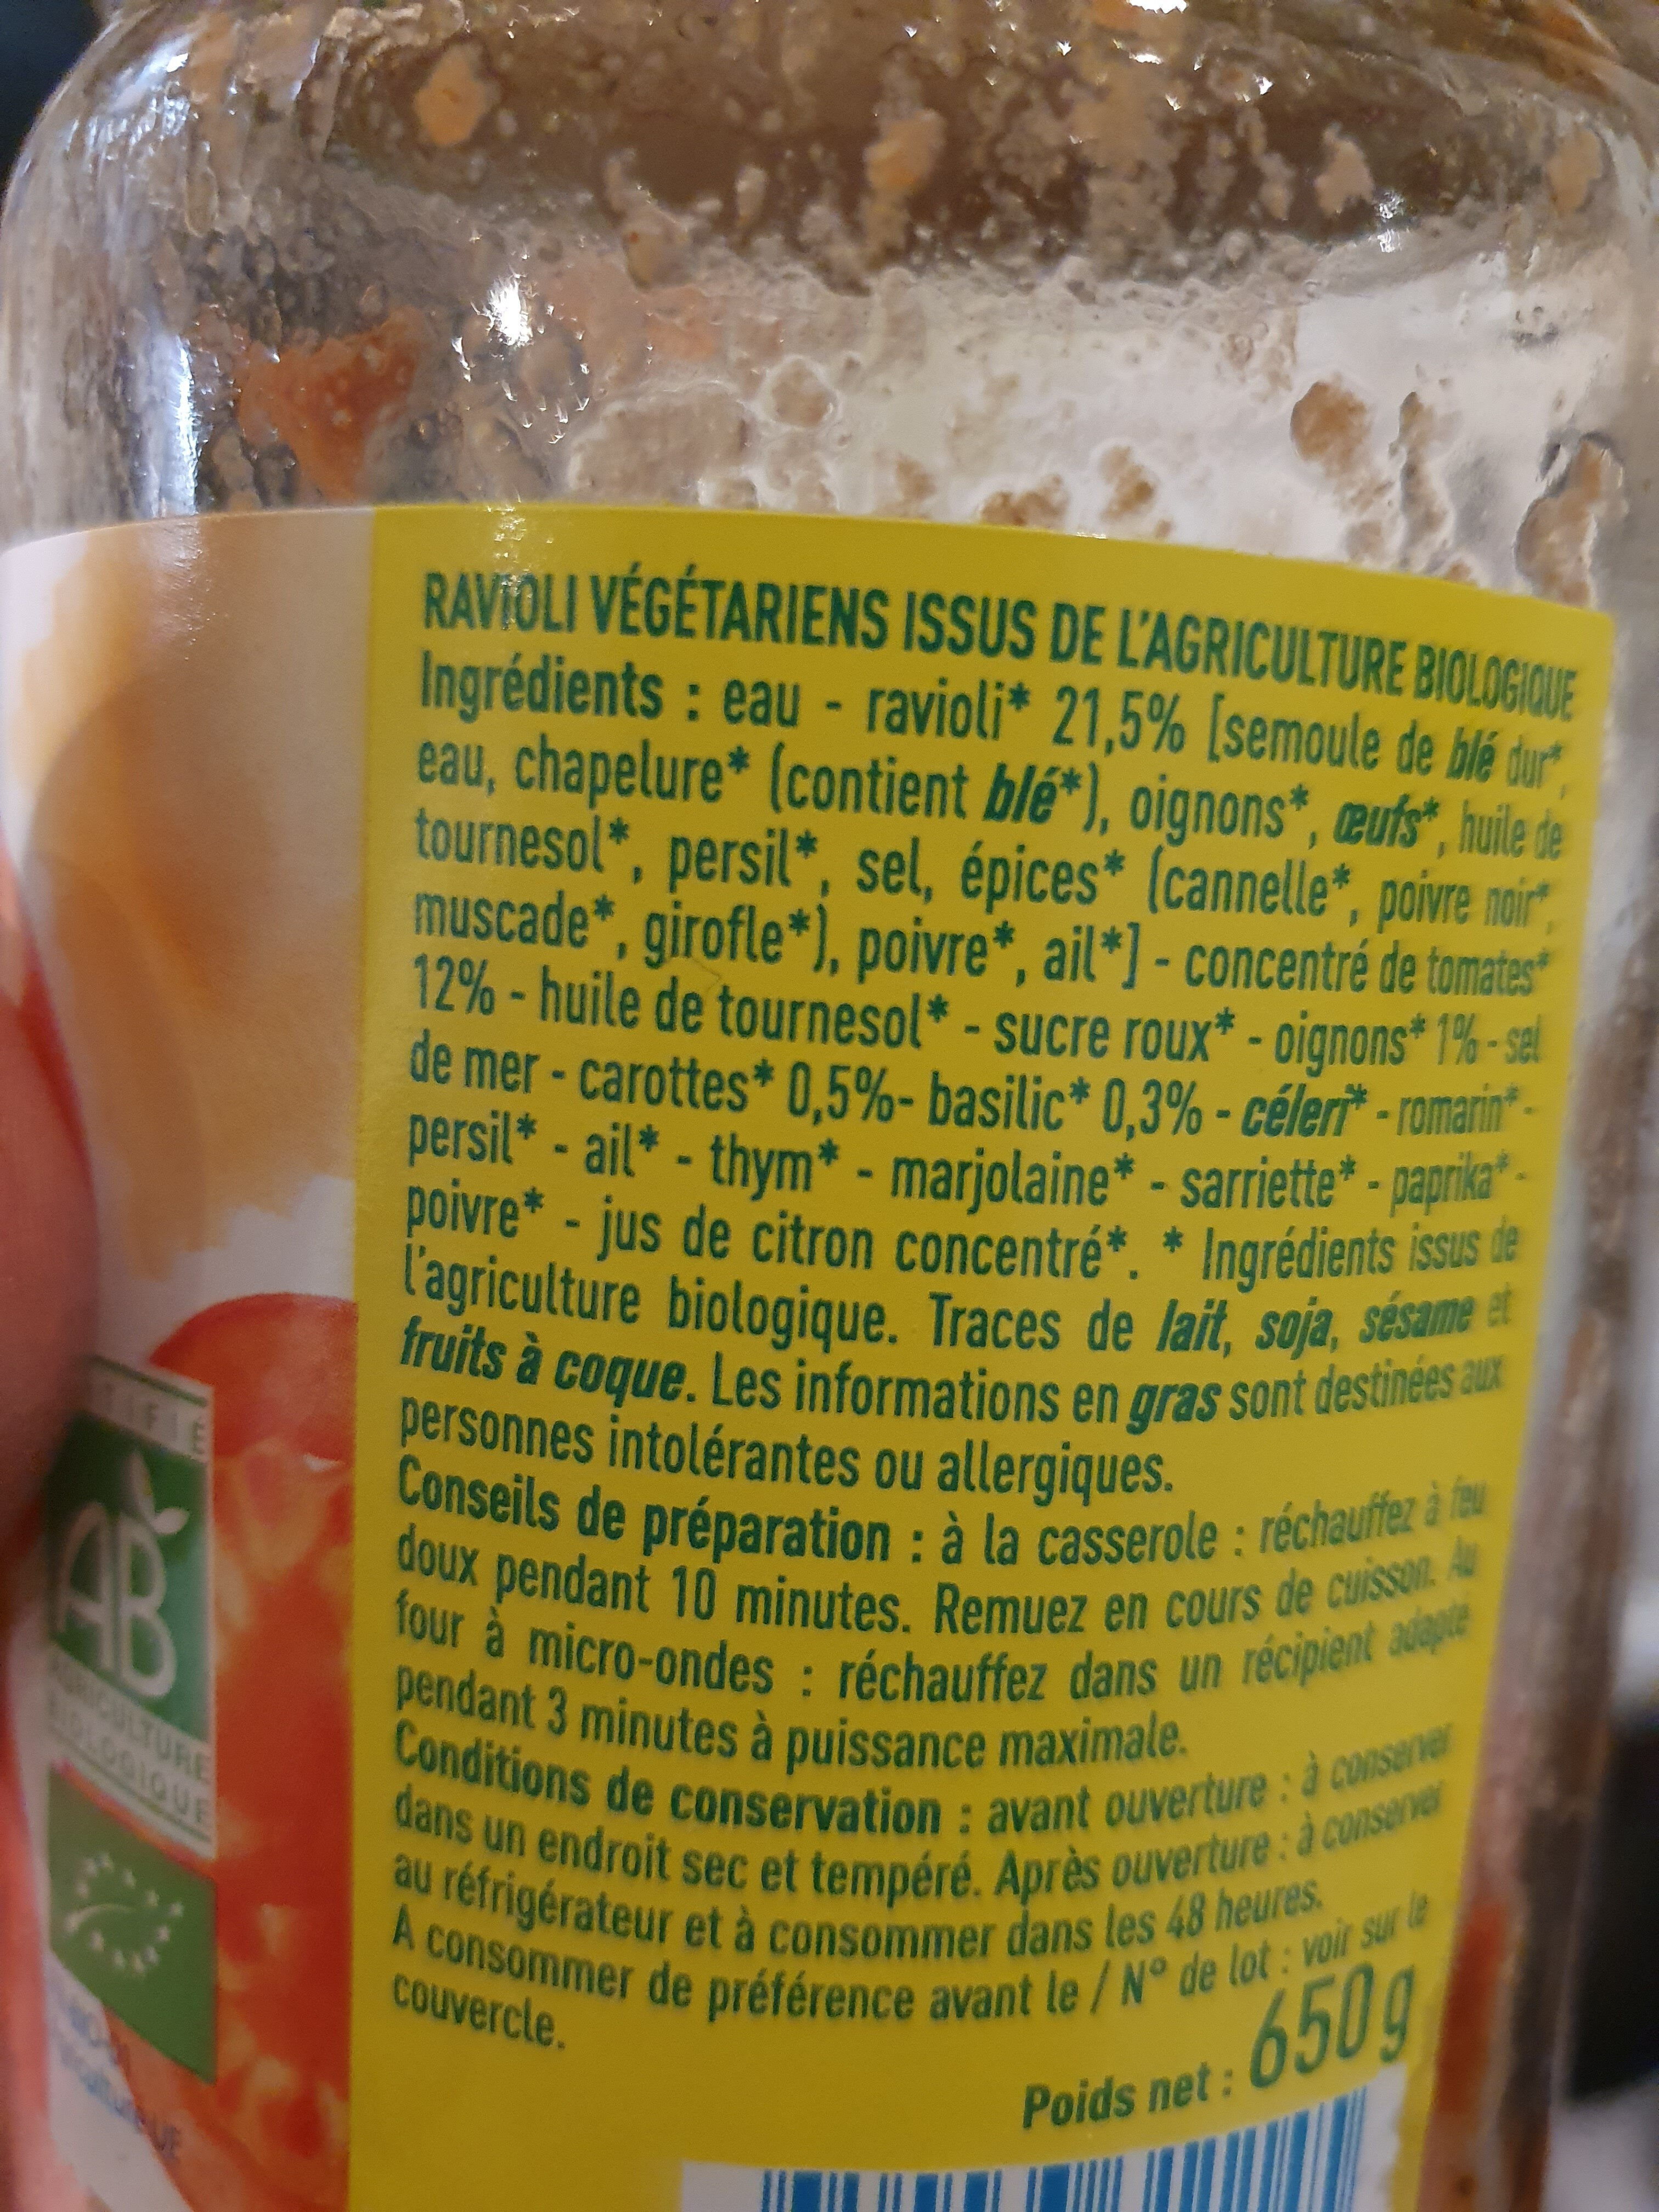 Ravioli végétariens - Ingredients - fr